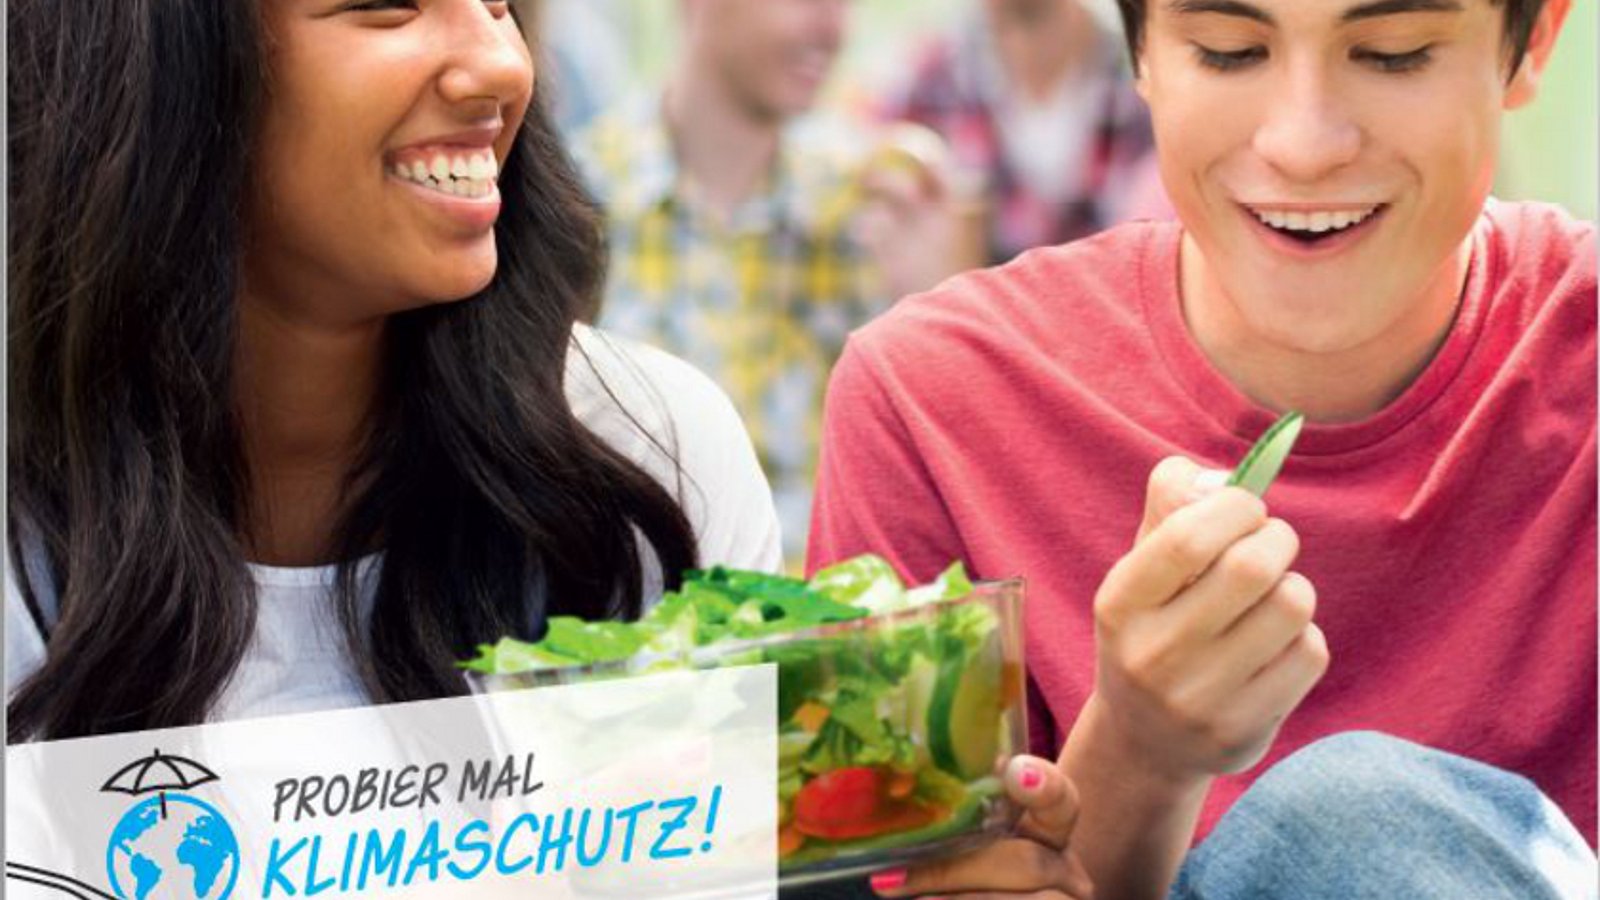 Werbung der Verbraucherzentrale Nordrhein-Westfalen: Teenager essen Salat.